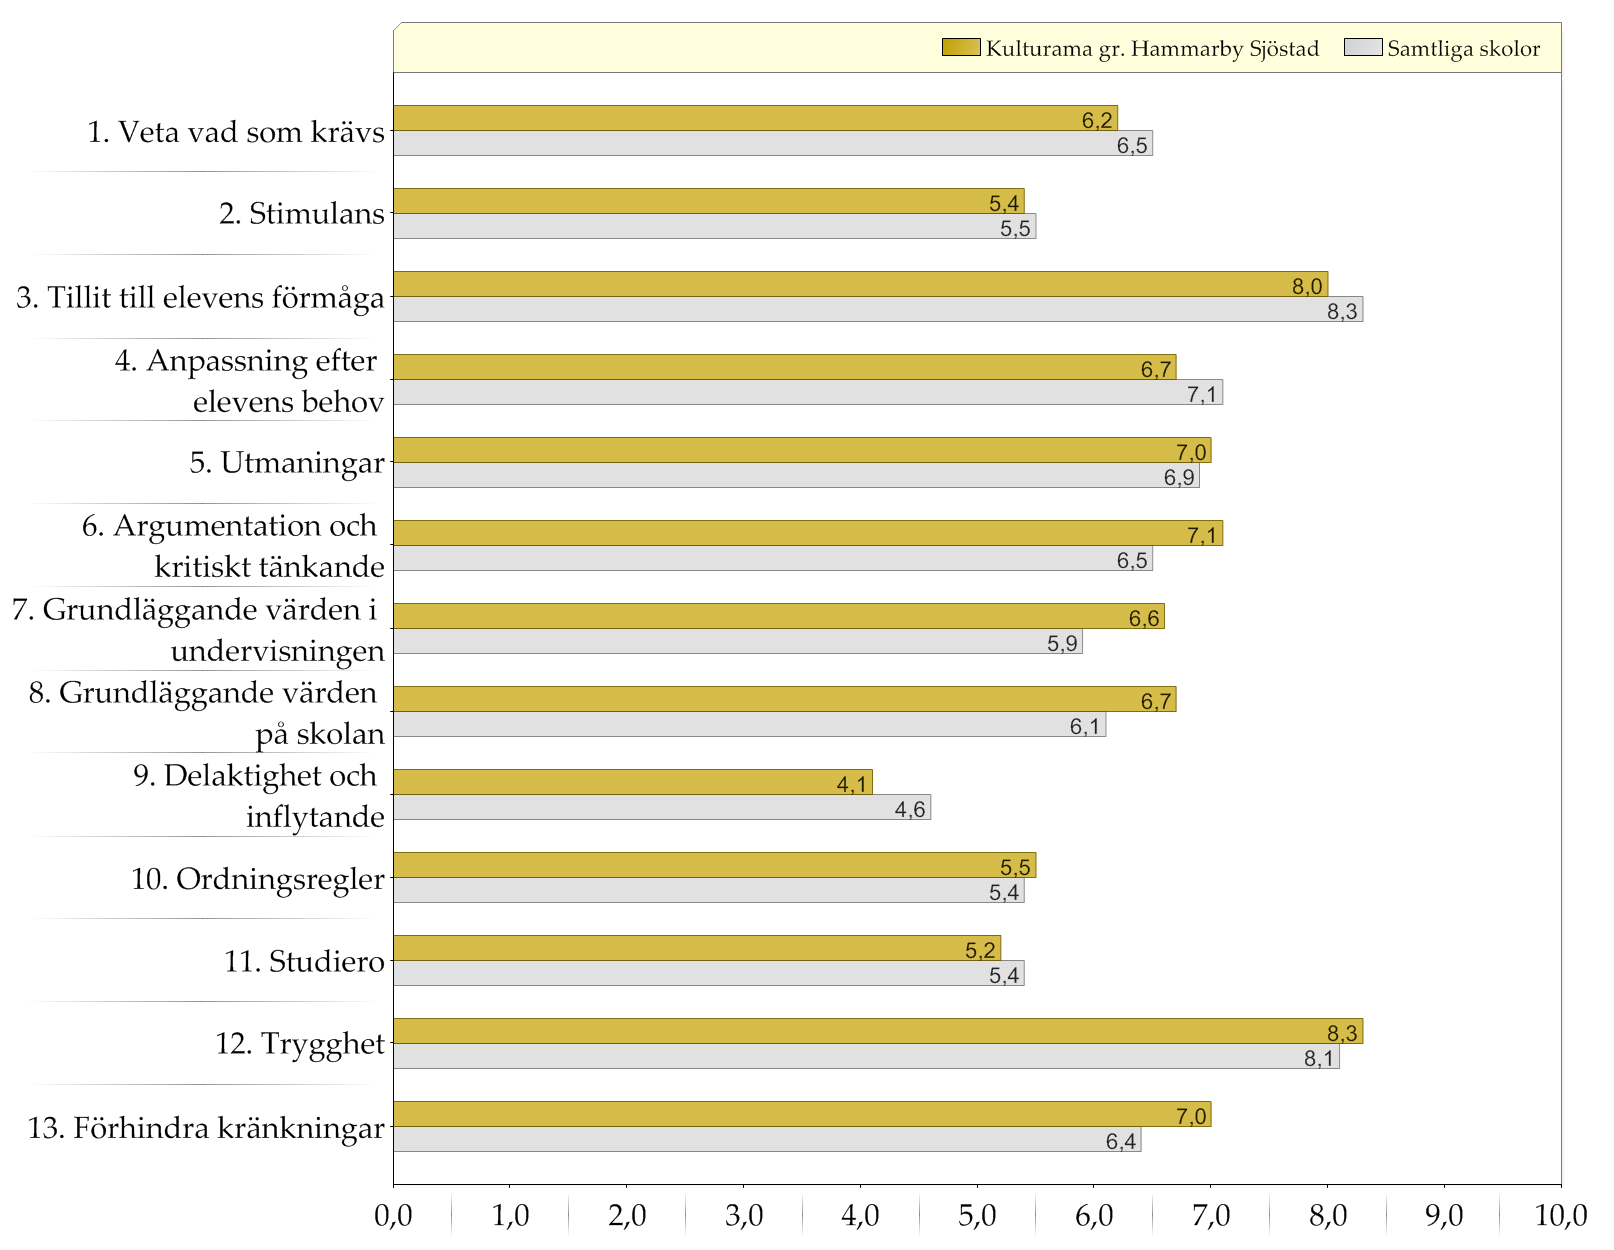 Samtliga skolor / Kulturama gr Hammarby Sjöstad Resultat indexvärden Diagram över indexvärden (0-10) Den gula stapeln (övre raden) representerar indexvärdet för